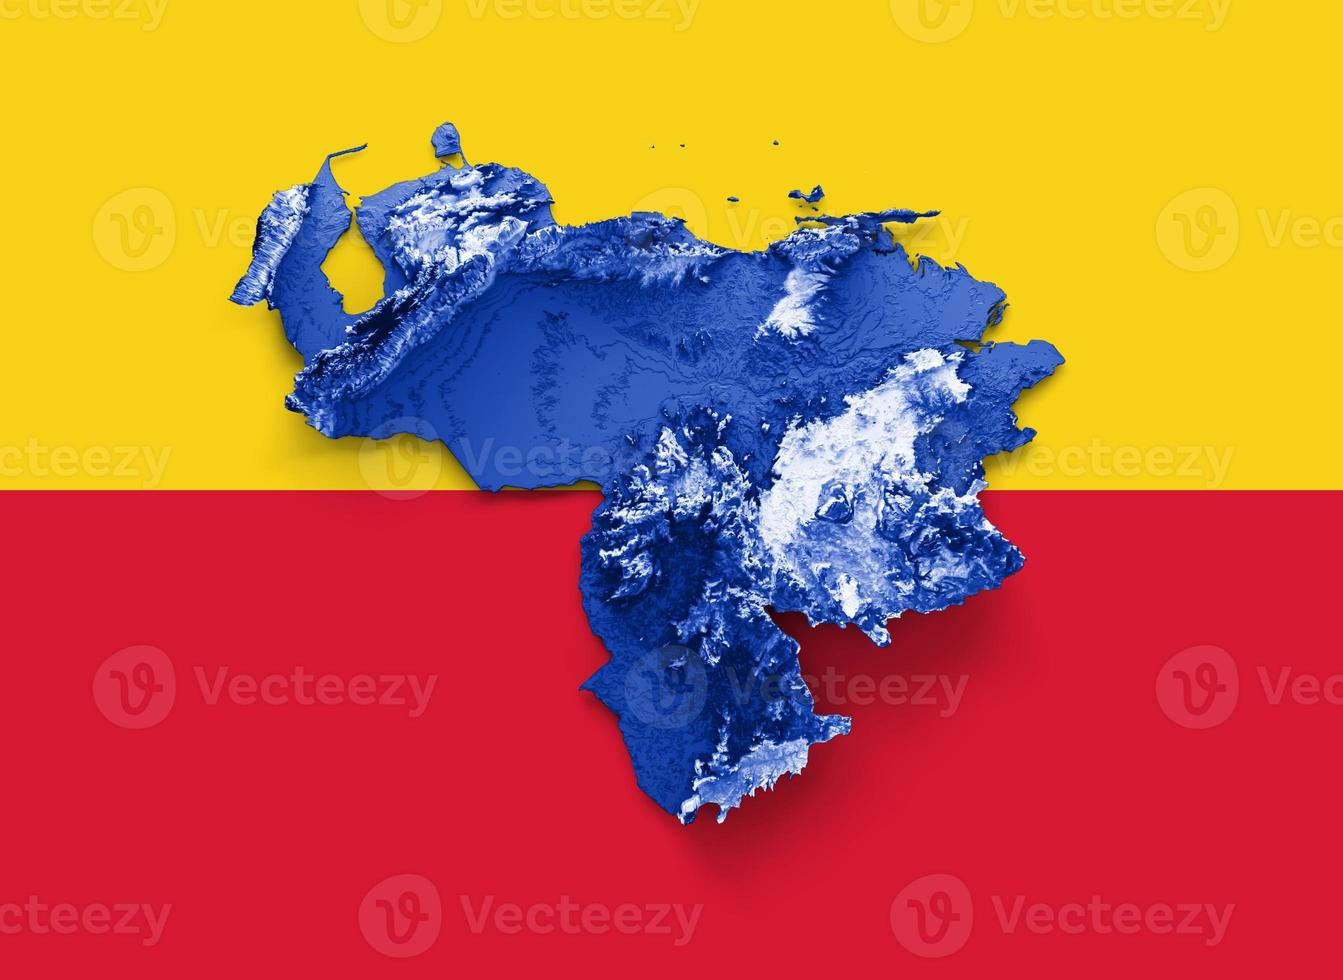 Venezuela kaart met de vlag kleuren blauw en rood schaduwrijk Verlichting kaart 3d illustratie foto